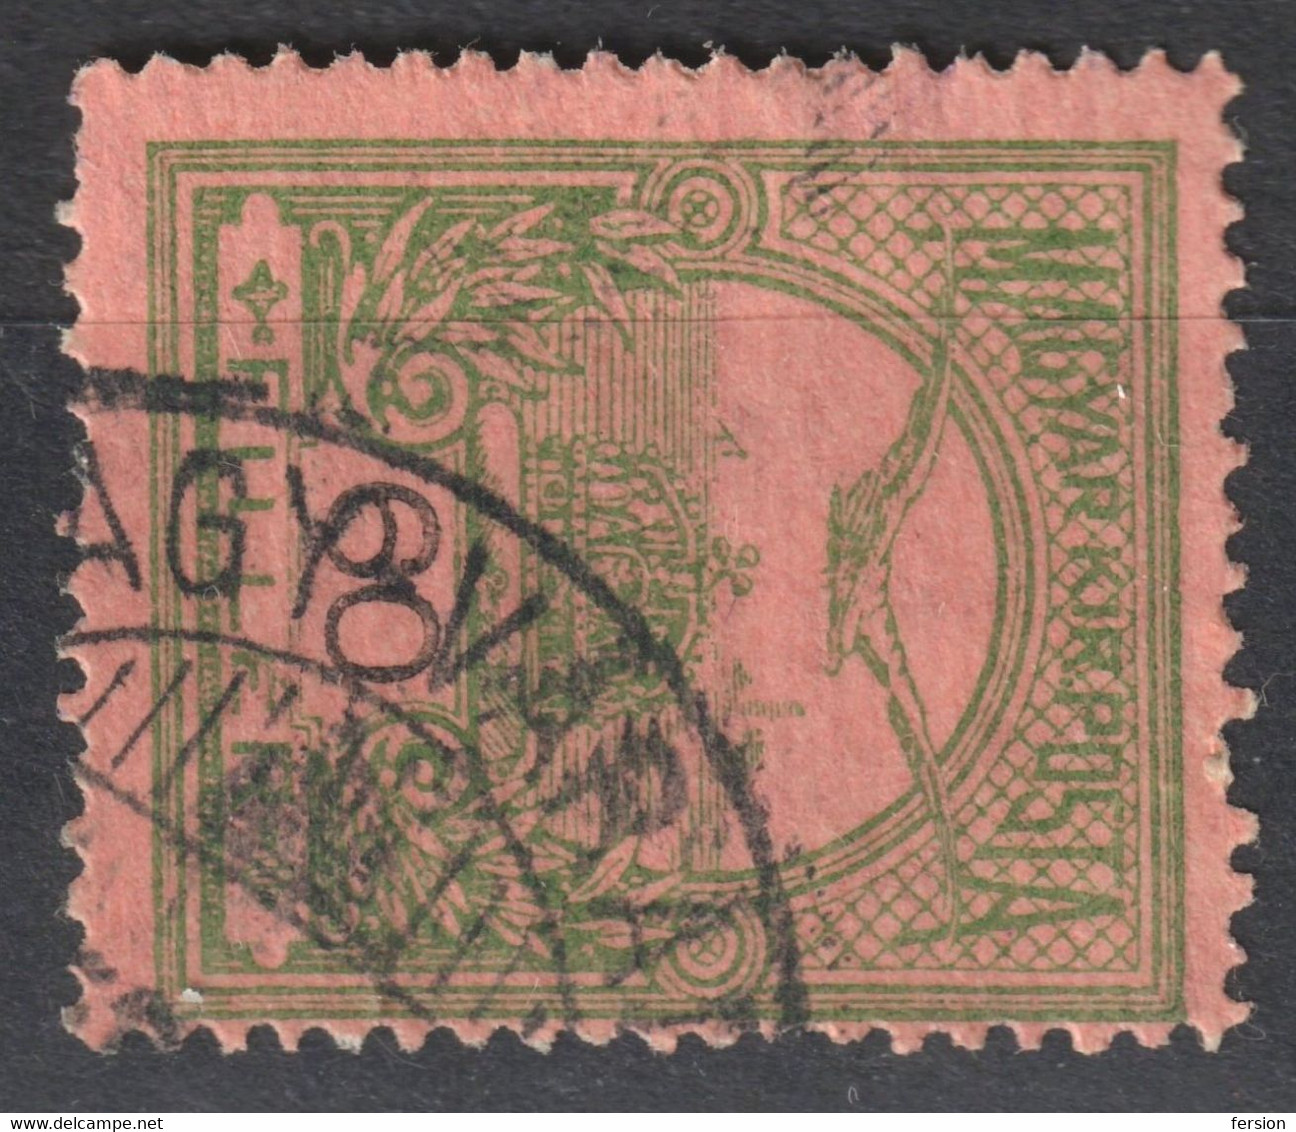 NAGYVÁRAD ORADEA Postmark POST Center / TURUL Crown 1906 Hungary Romania Transylvania Bihar County KuK - 60 Fill - Transilvania